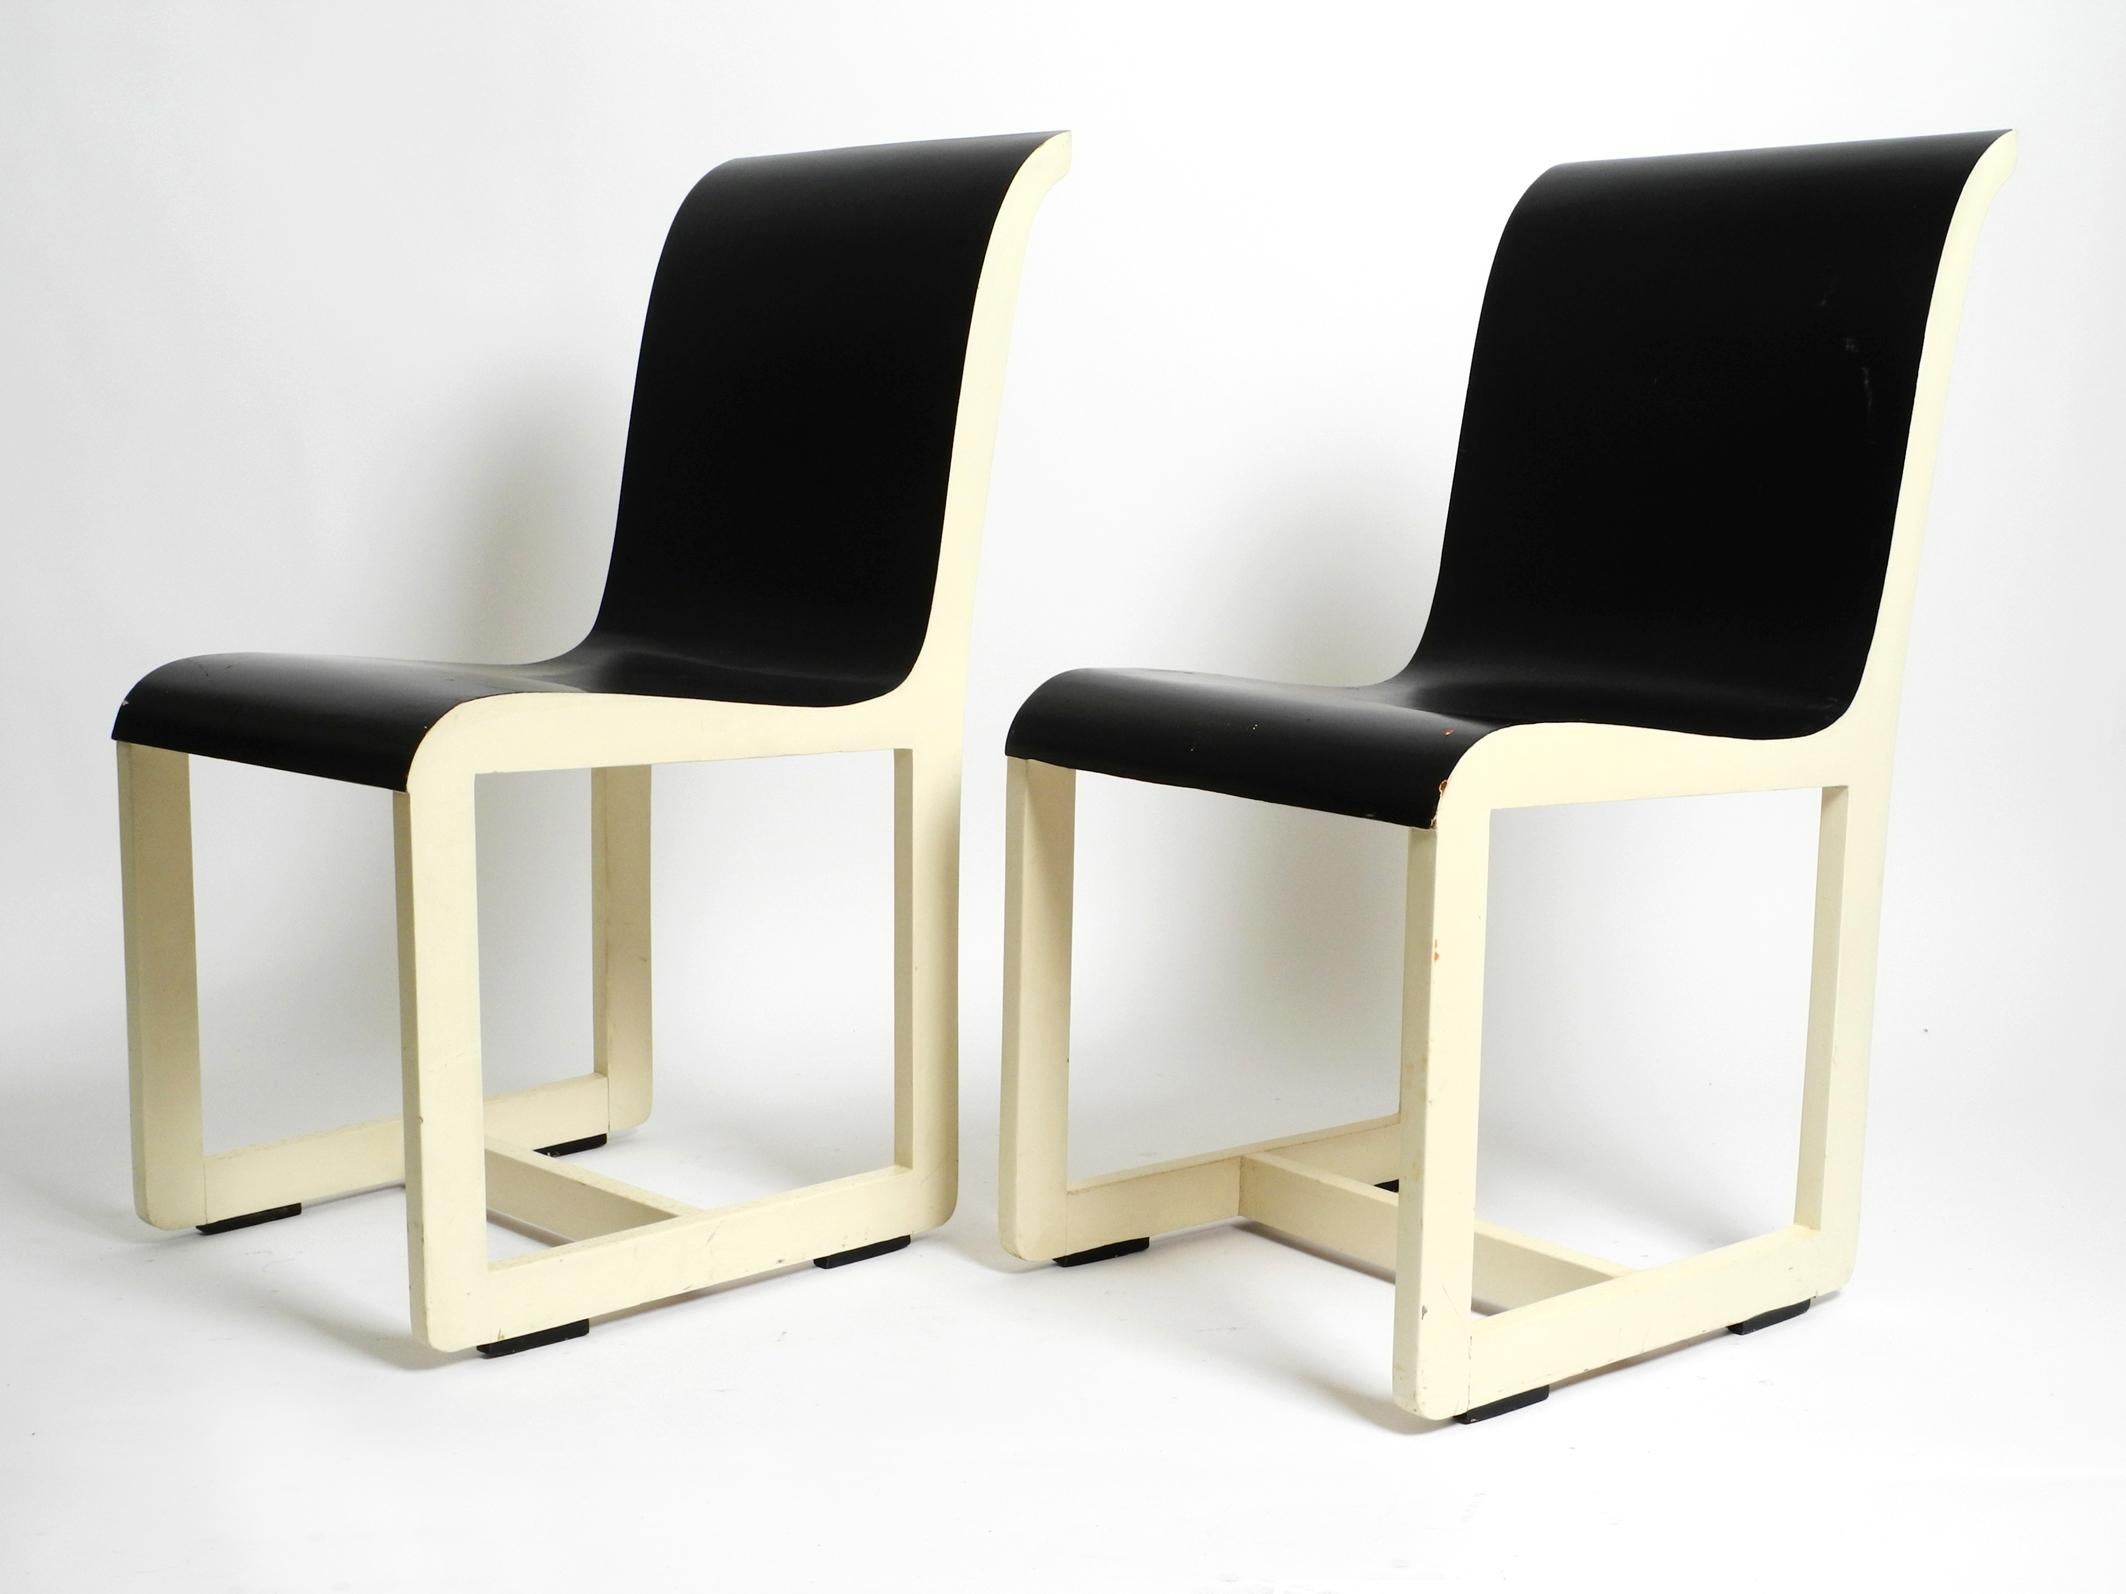 Deux chaises en bois originales des années 1930 du célèbre étudiant du Bauhaus Peter Keler.
Il a travaillé comme peintre, graphiste, architecte, photographe et créateur de meubles.
Né à Kiel, il a été membre du groupe d'artistes de Worpswede au